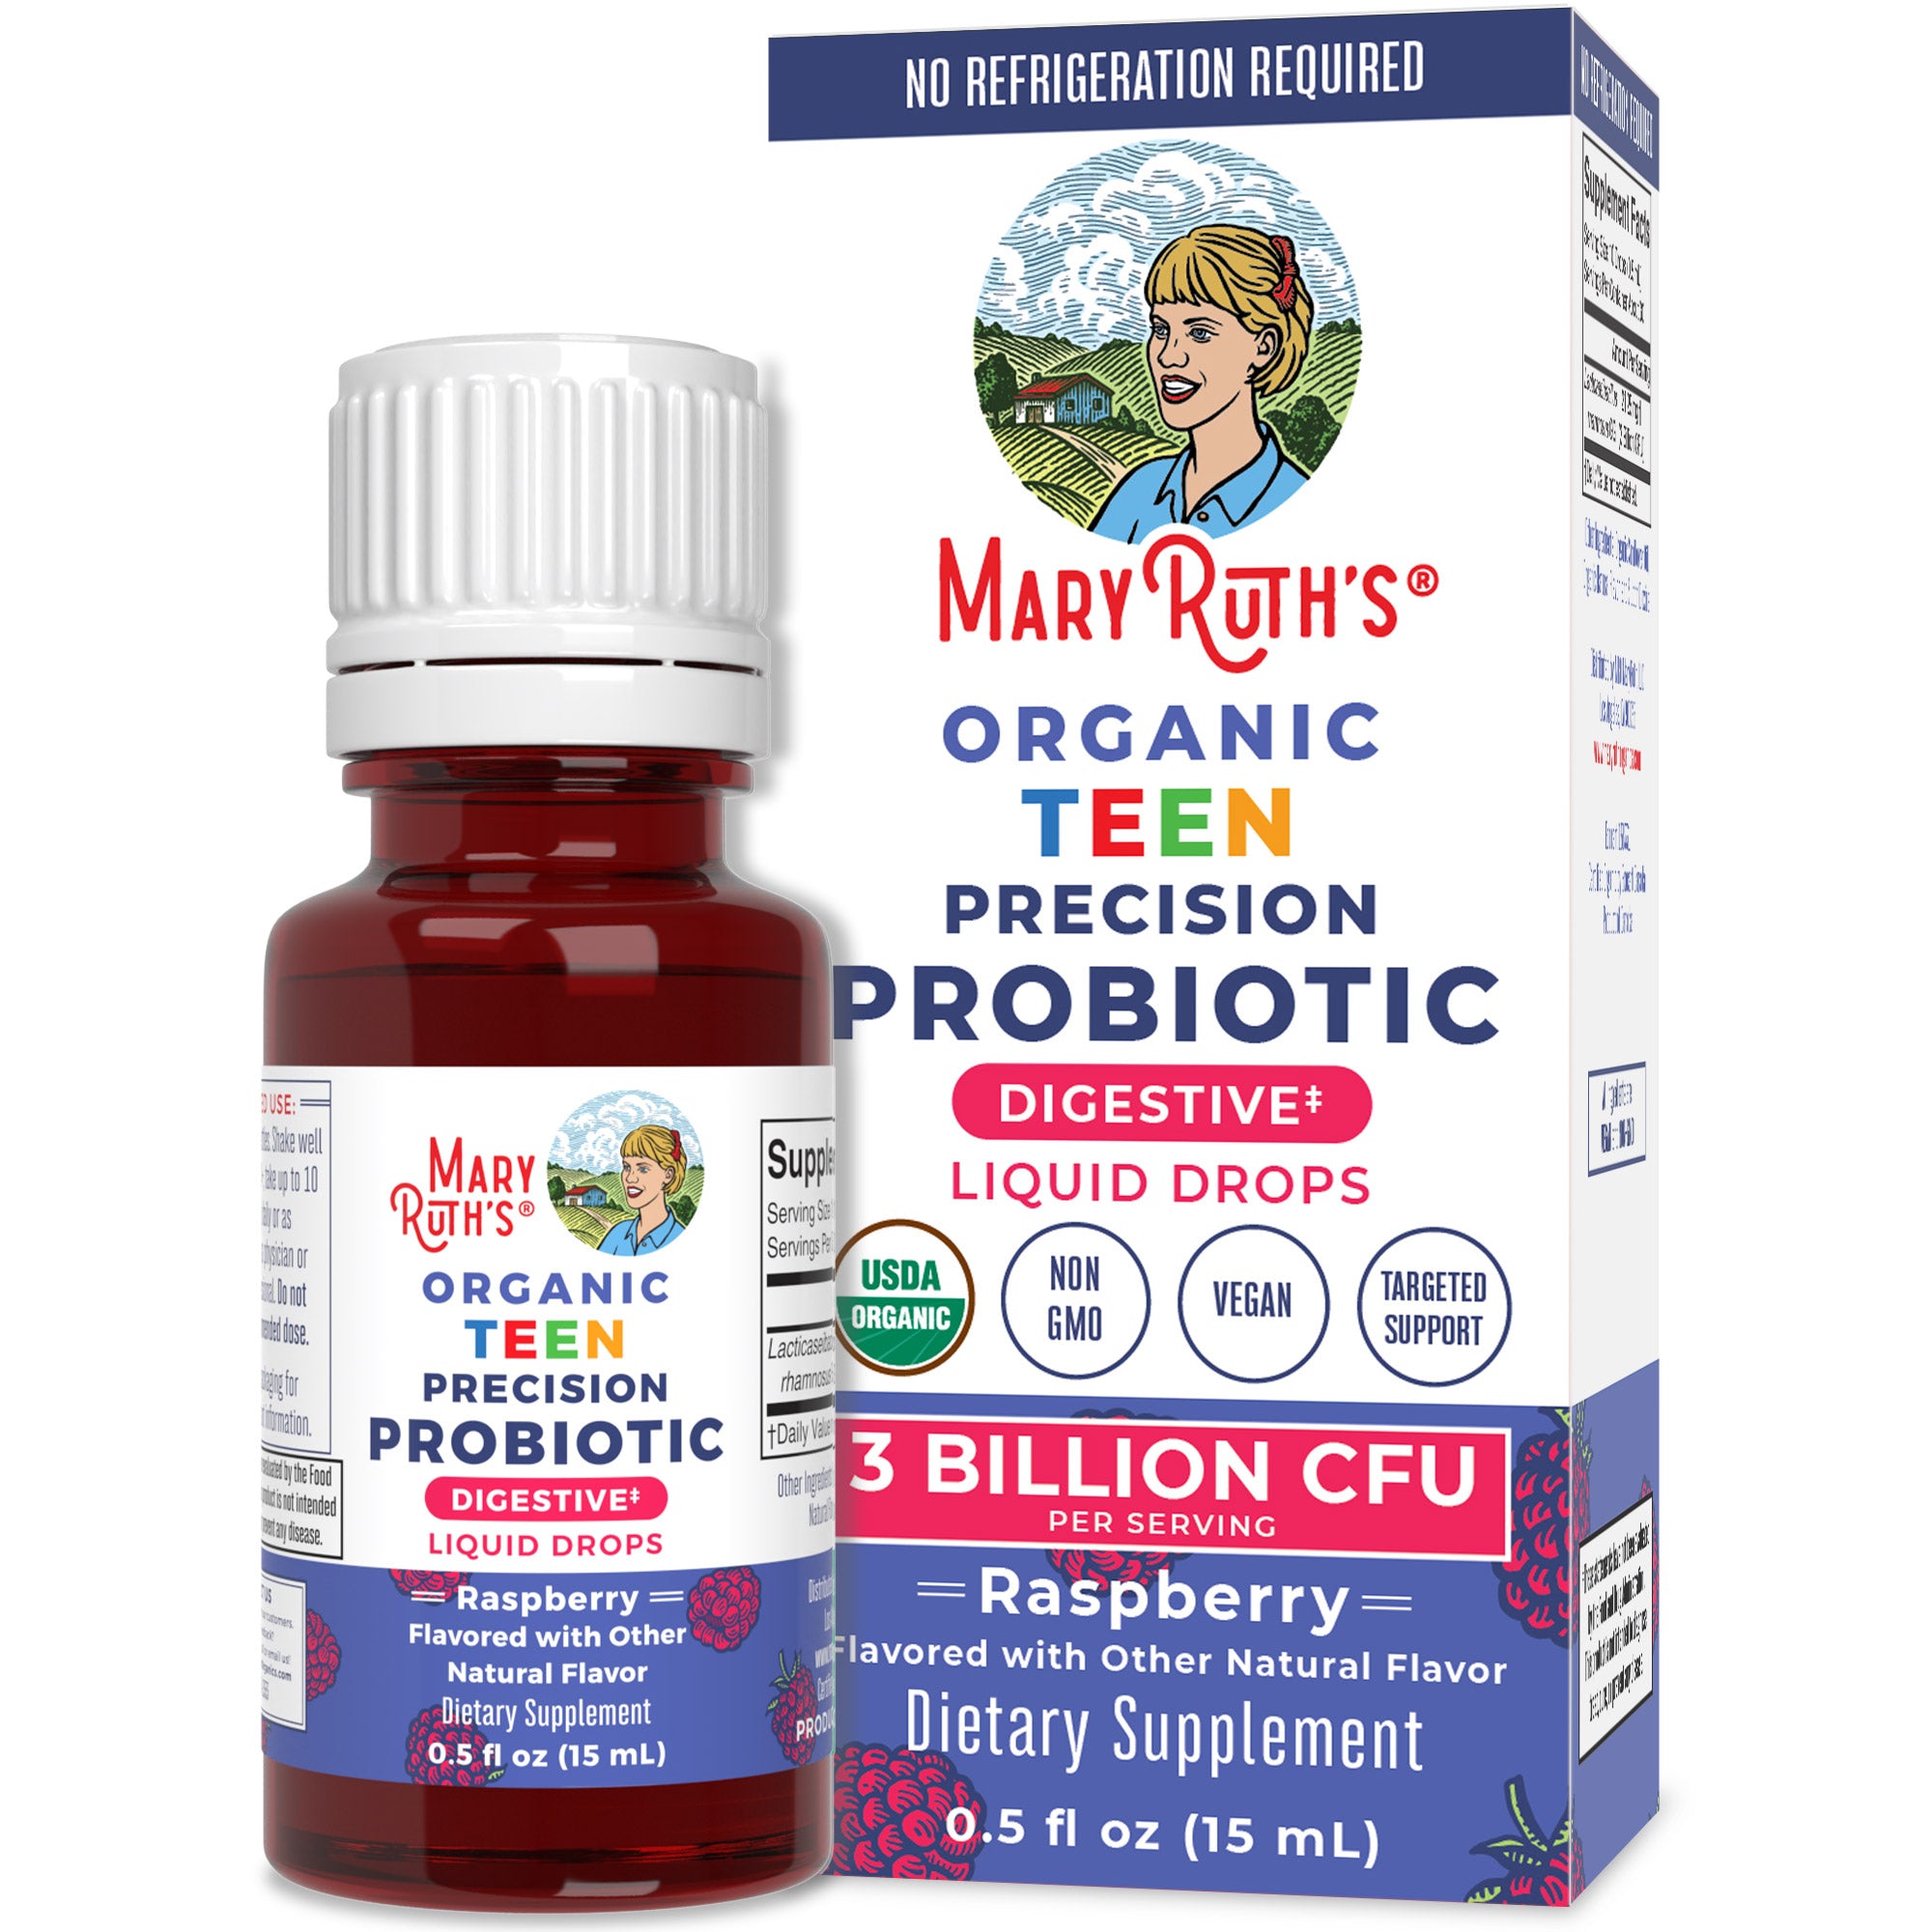 Organic Teen Precision Probiotic Digestive Liquid Drops